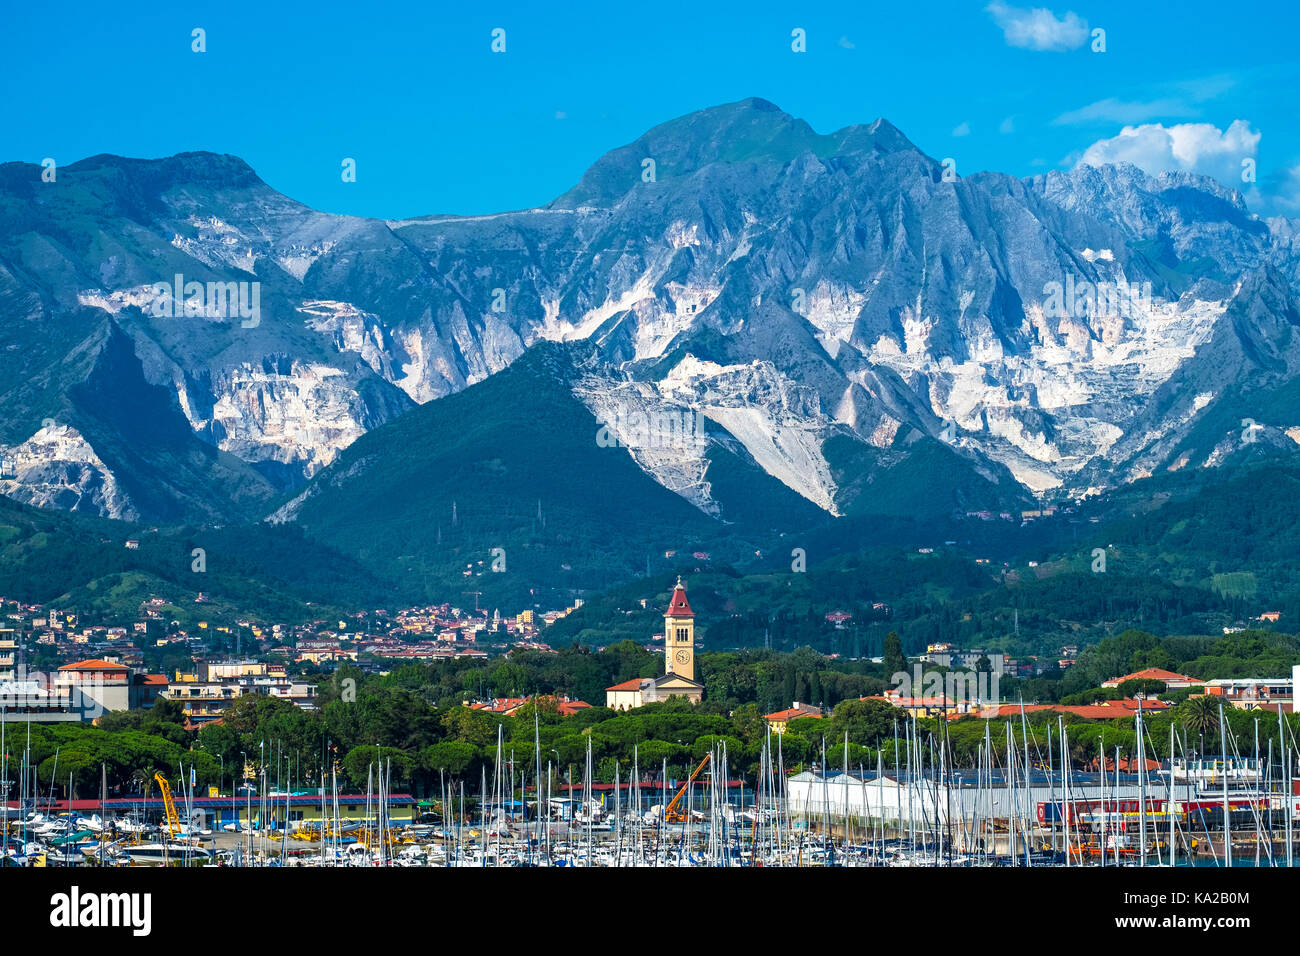 Les alpes Apuanes à proximité de Marina di Carrara, partie de la montagnes des Apennins, dans le nord de la toscane, italie. Banque D'Images